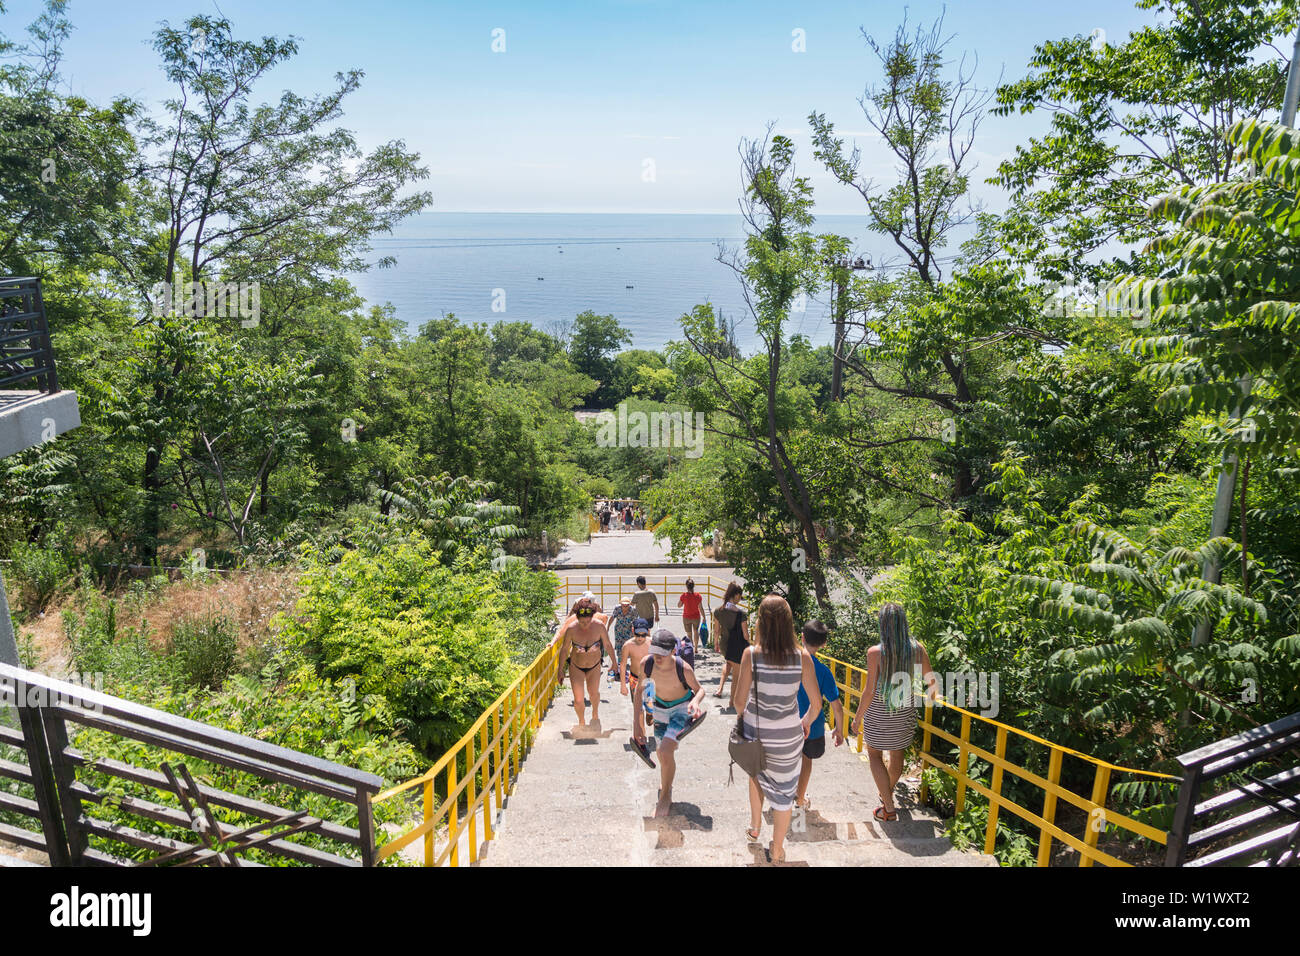 At stairs to 15 Fontana beach of Odessa, Ukraine - June 8, 2019: People walking to the beach 15 Fontana in Odessa, Ukraine Stock Photo